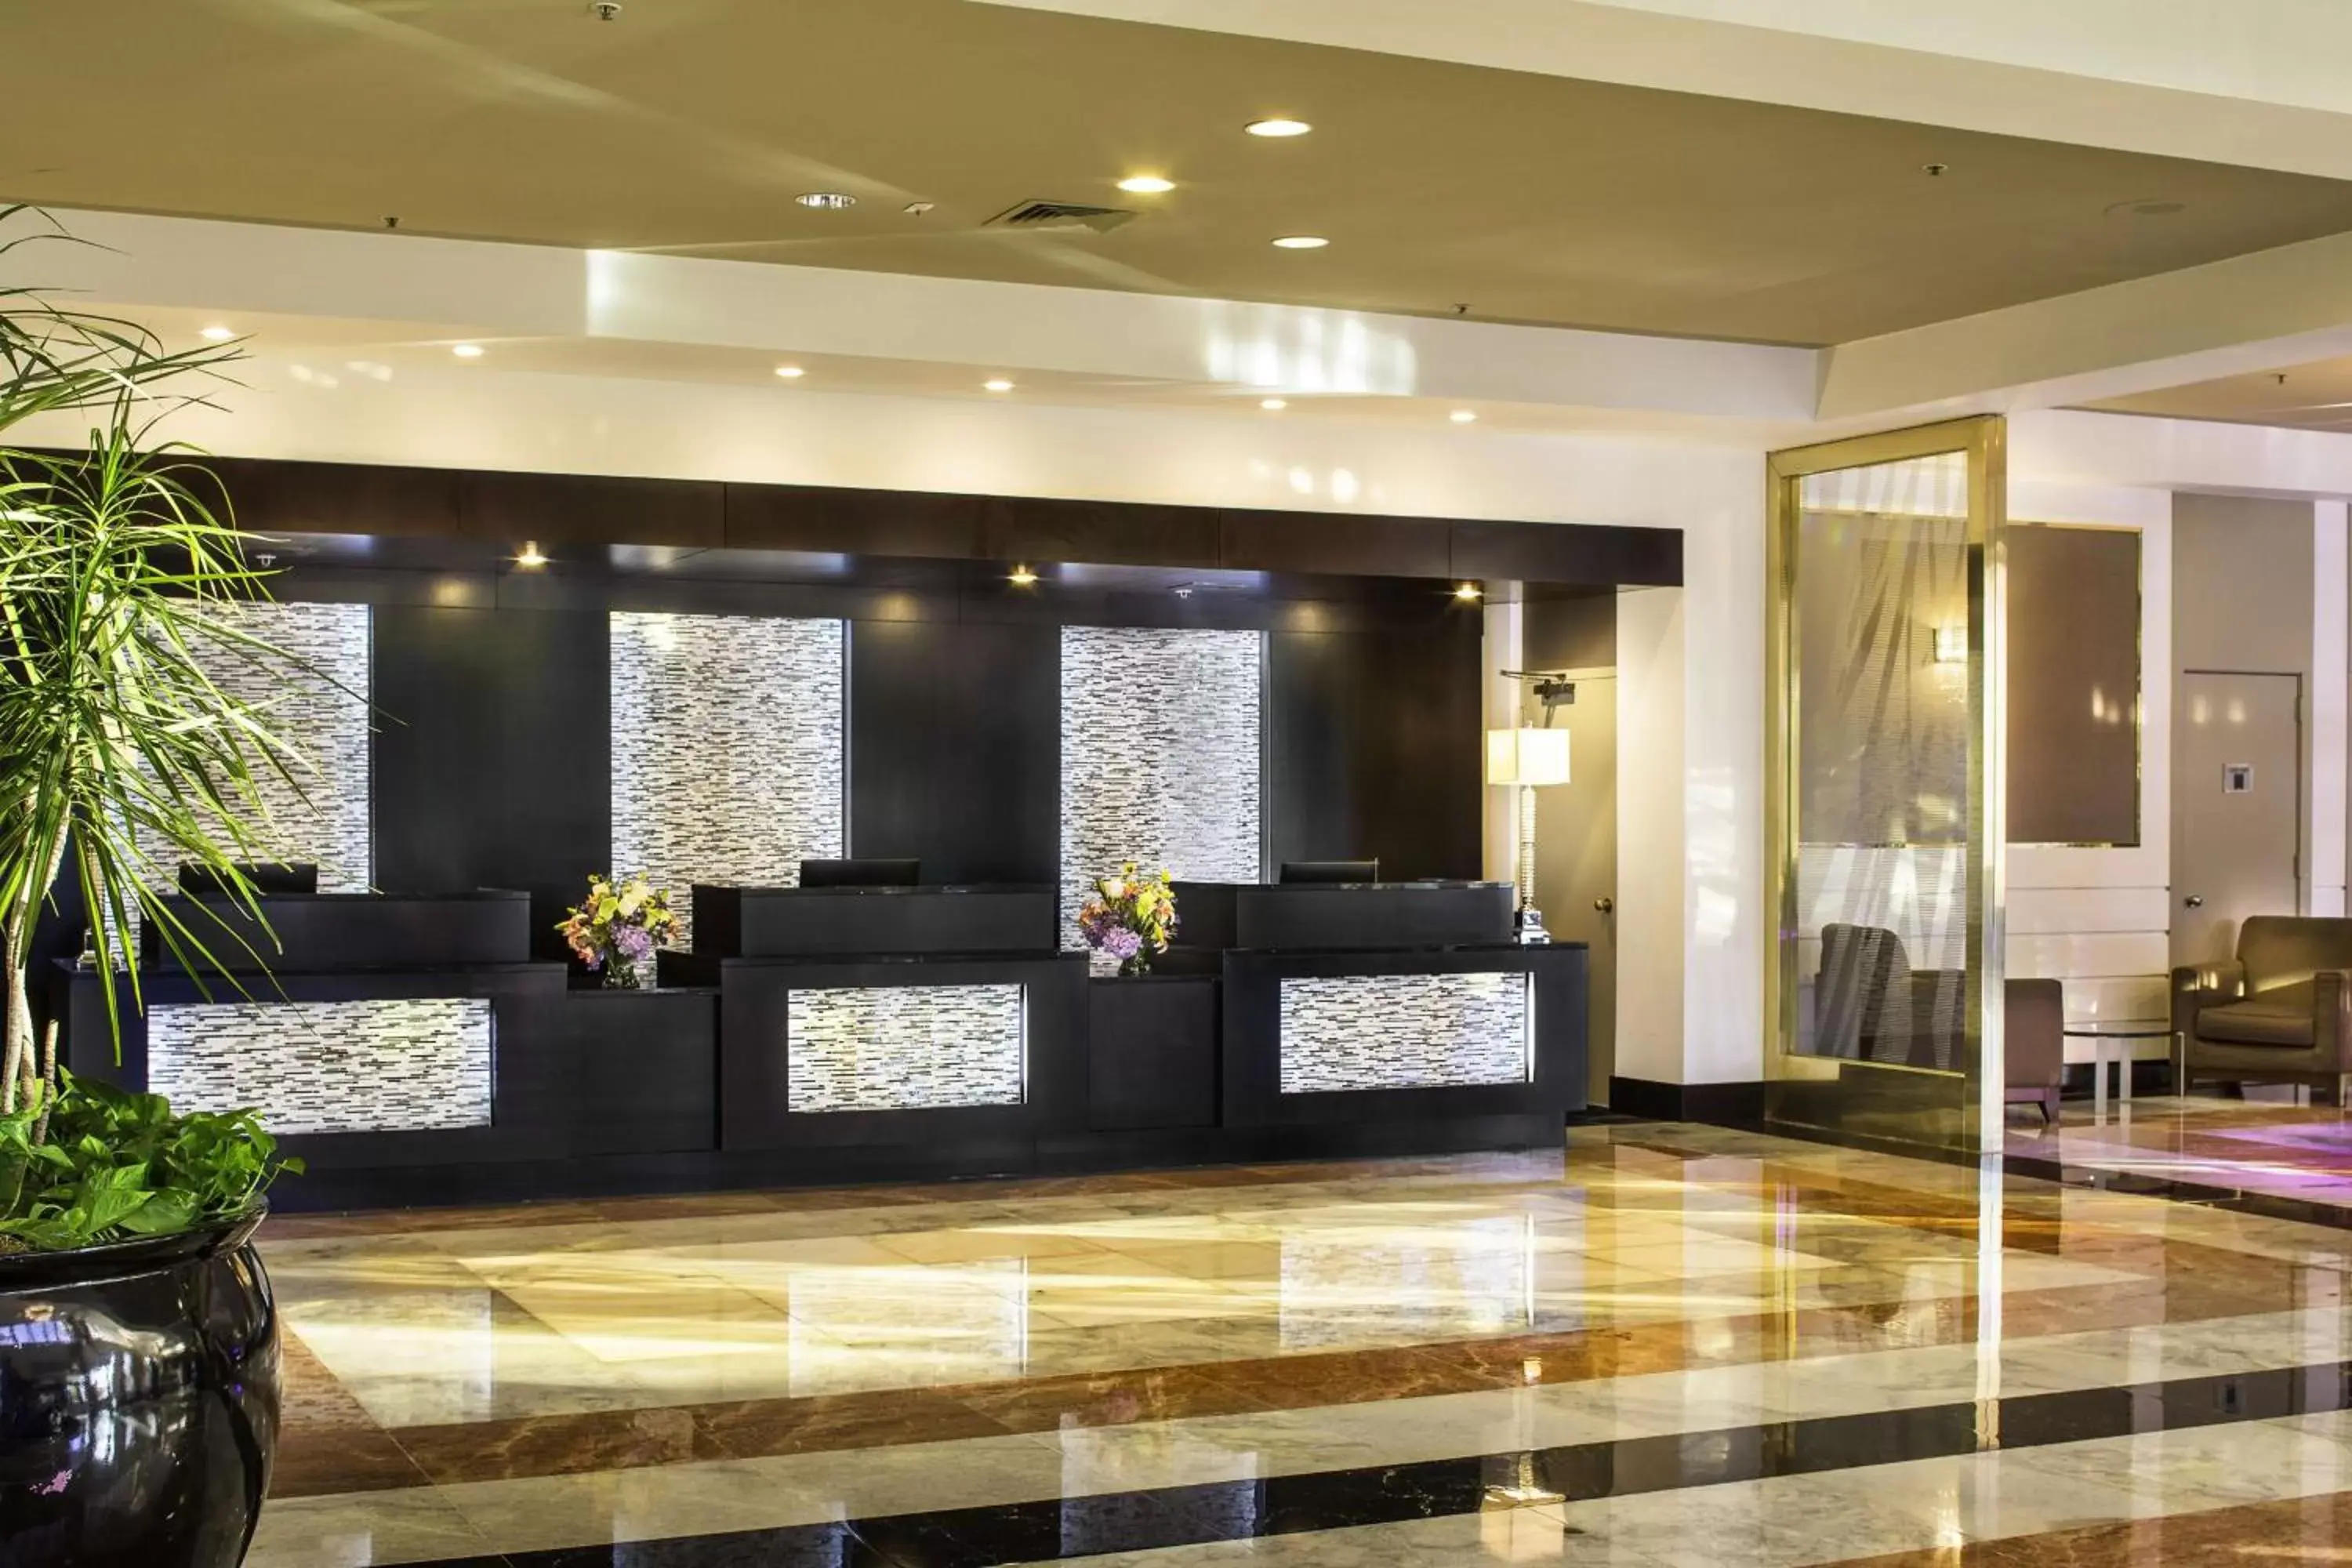 Lobby or reception, Lobby/Reception in LaGuardia Plaza Hotel